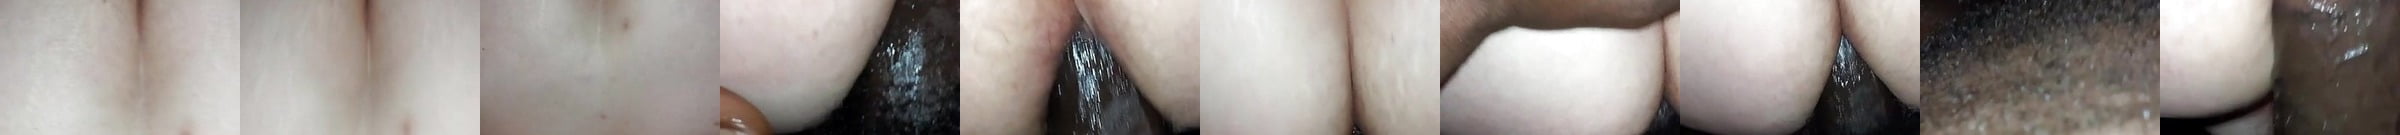 Anal Porn Videos Of Hot Ass Fucking Girls Xhamster